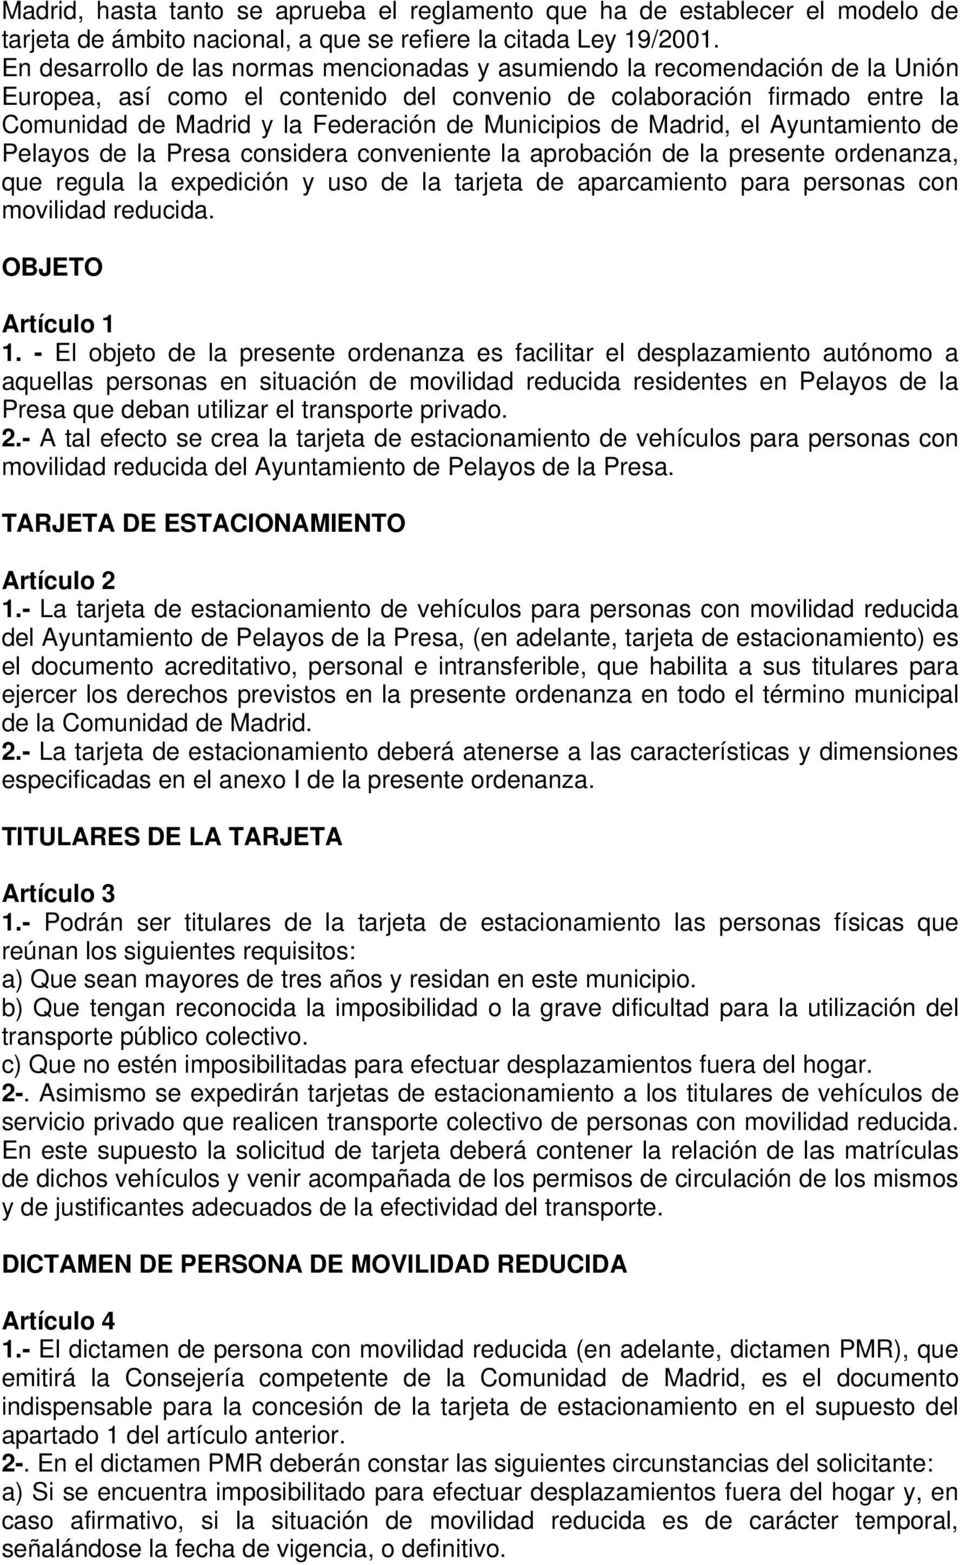 Municipios de Madrid, el Ayuntamiento de Pelayos de la Presa considera conveniente la aprobación de la presente ordenanza, que regula la expedición y uso de la tarjeta de aparcamiento para personas